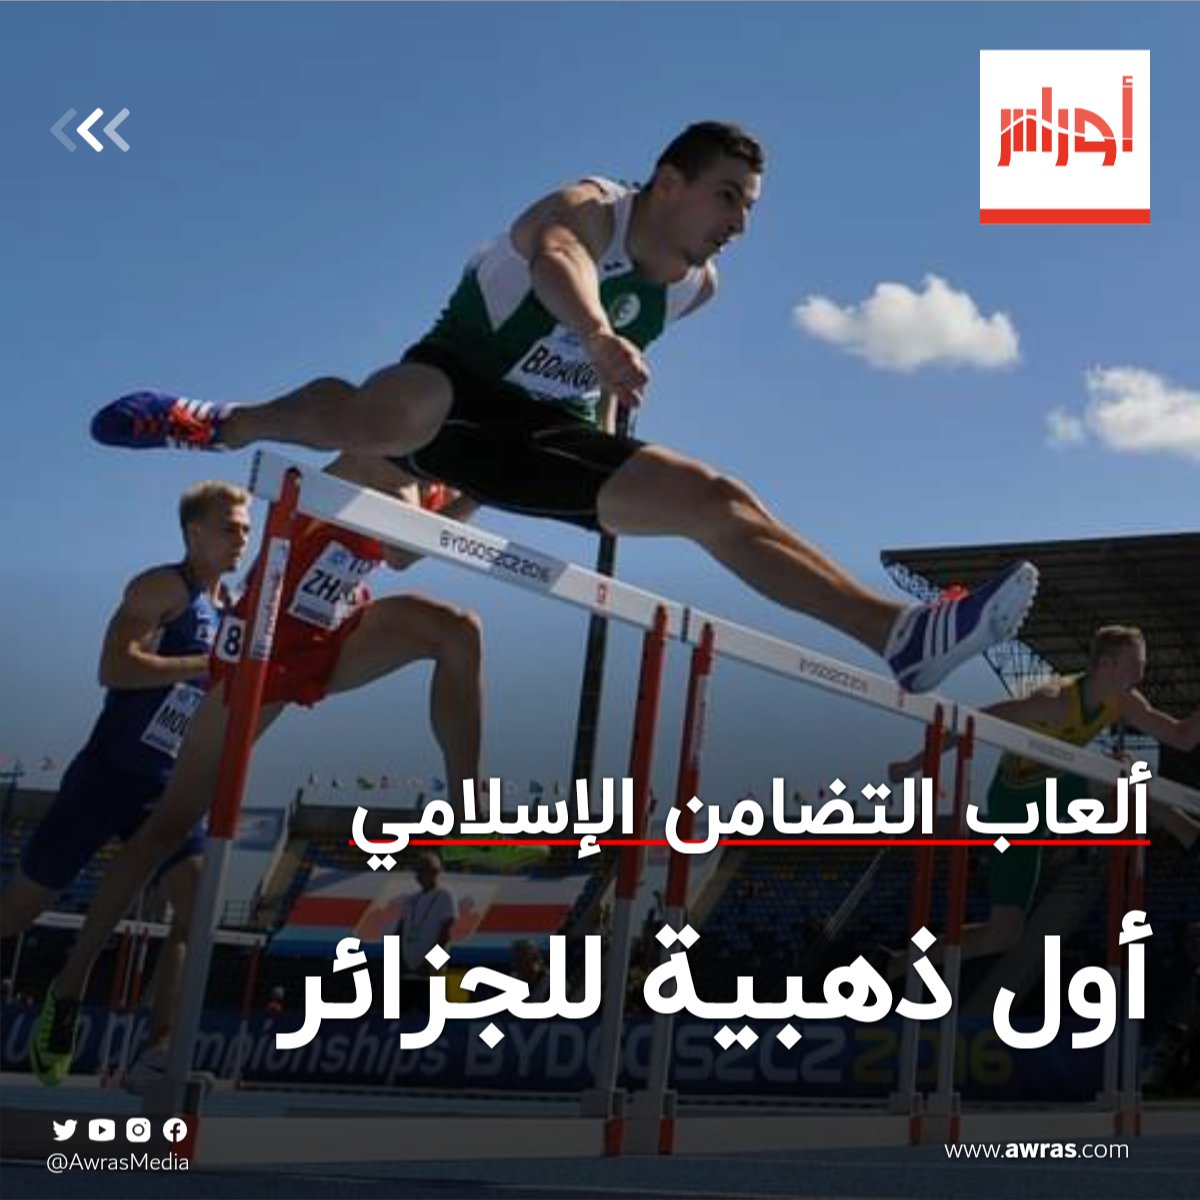 بوعناني يهدي الجزائر أول ميدالية ذهبية FZz6i57WYAE-IqO?format=jpg